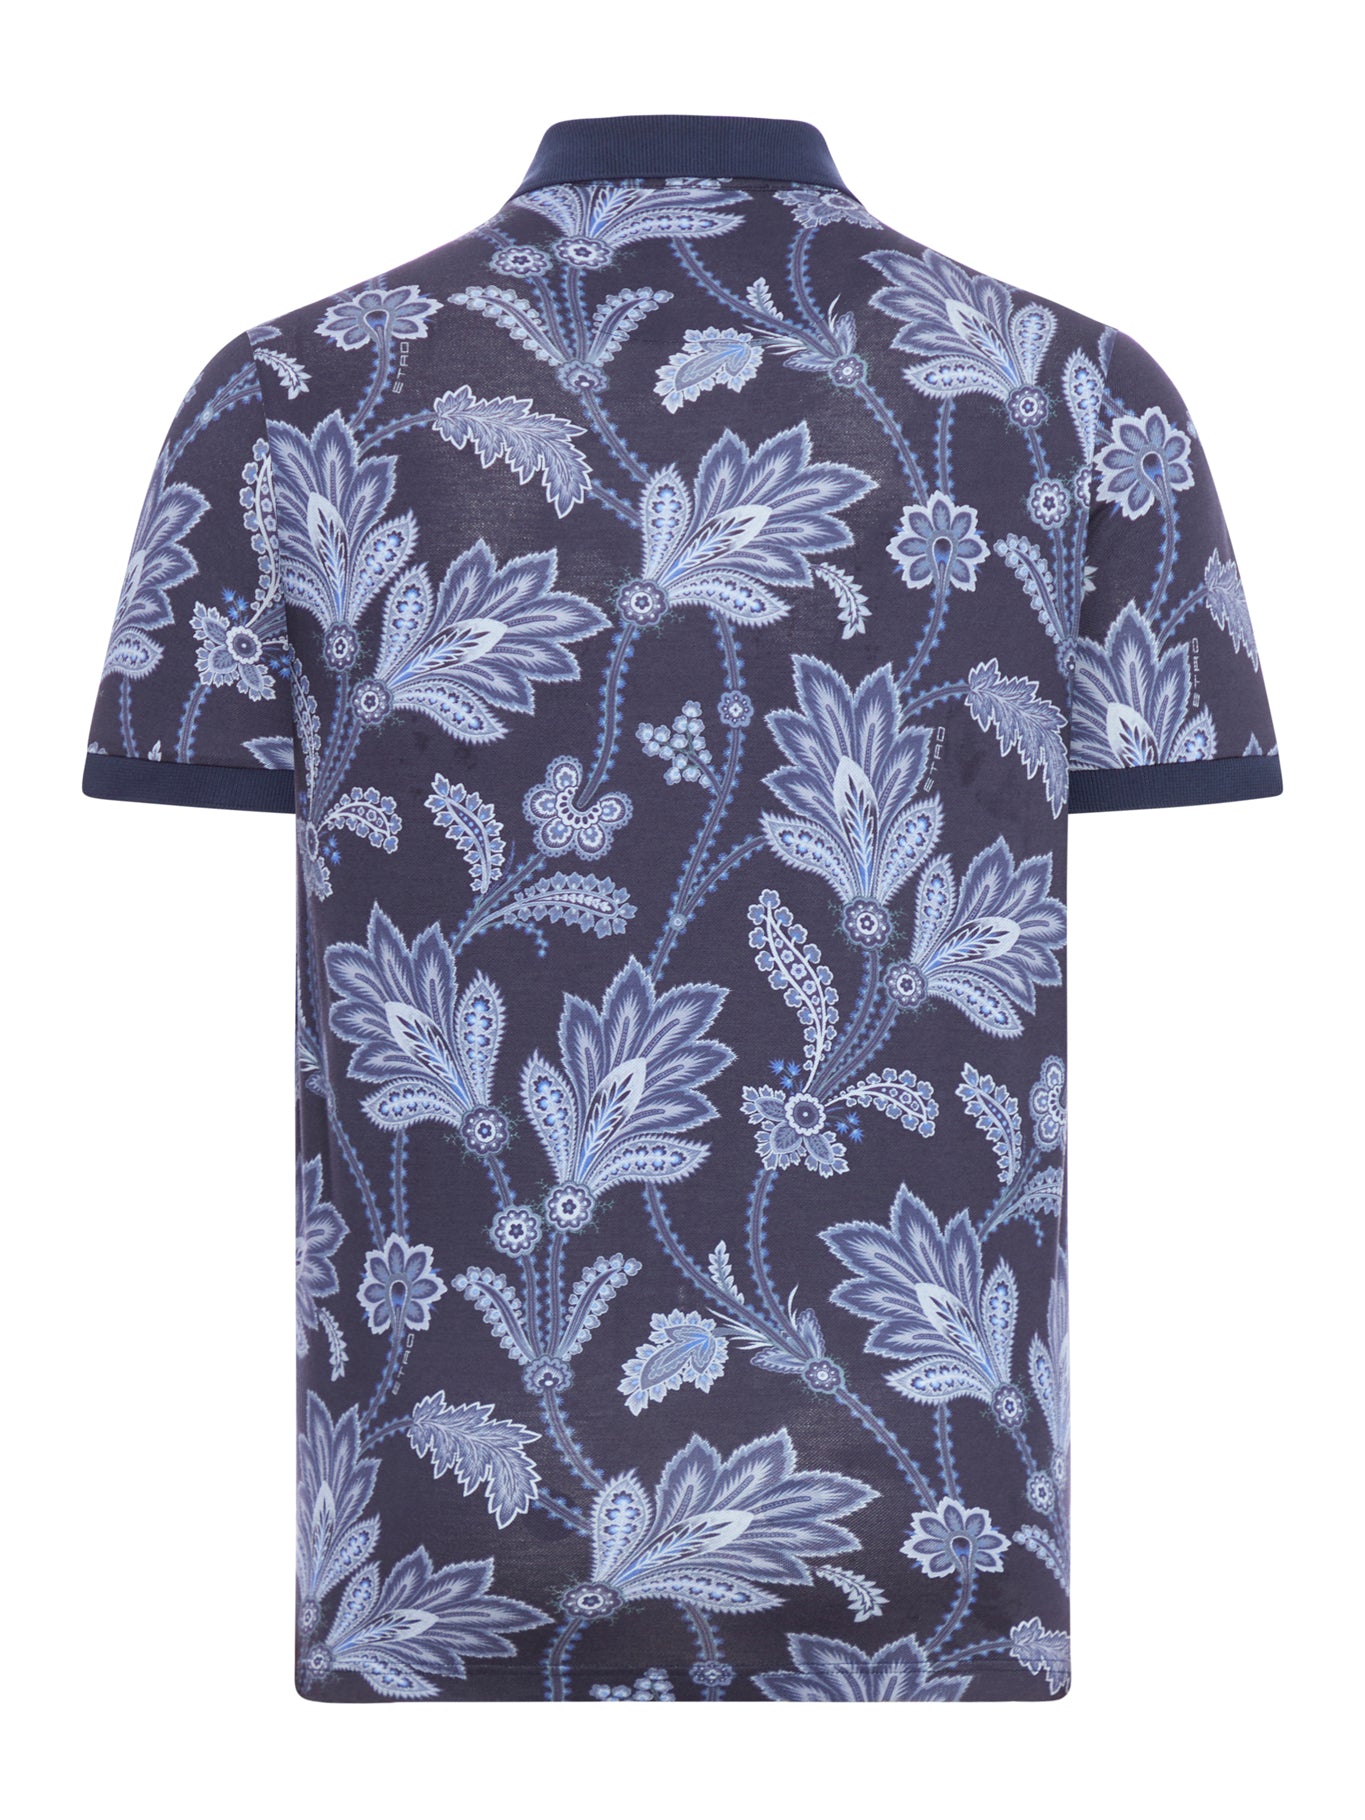 botanical-print shirt